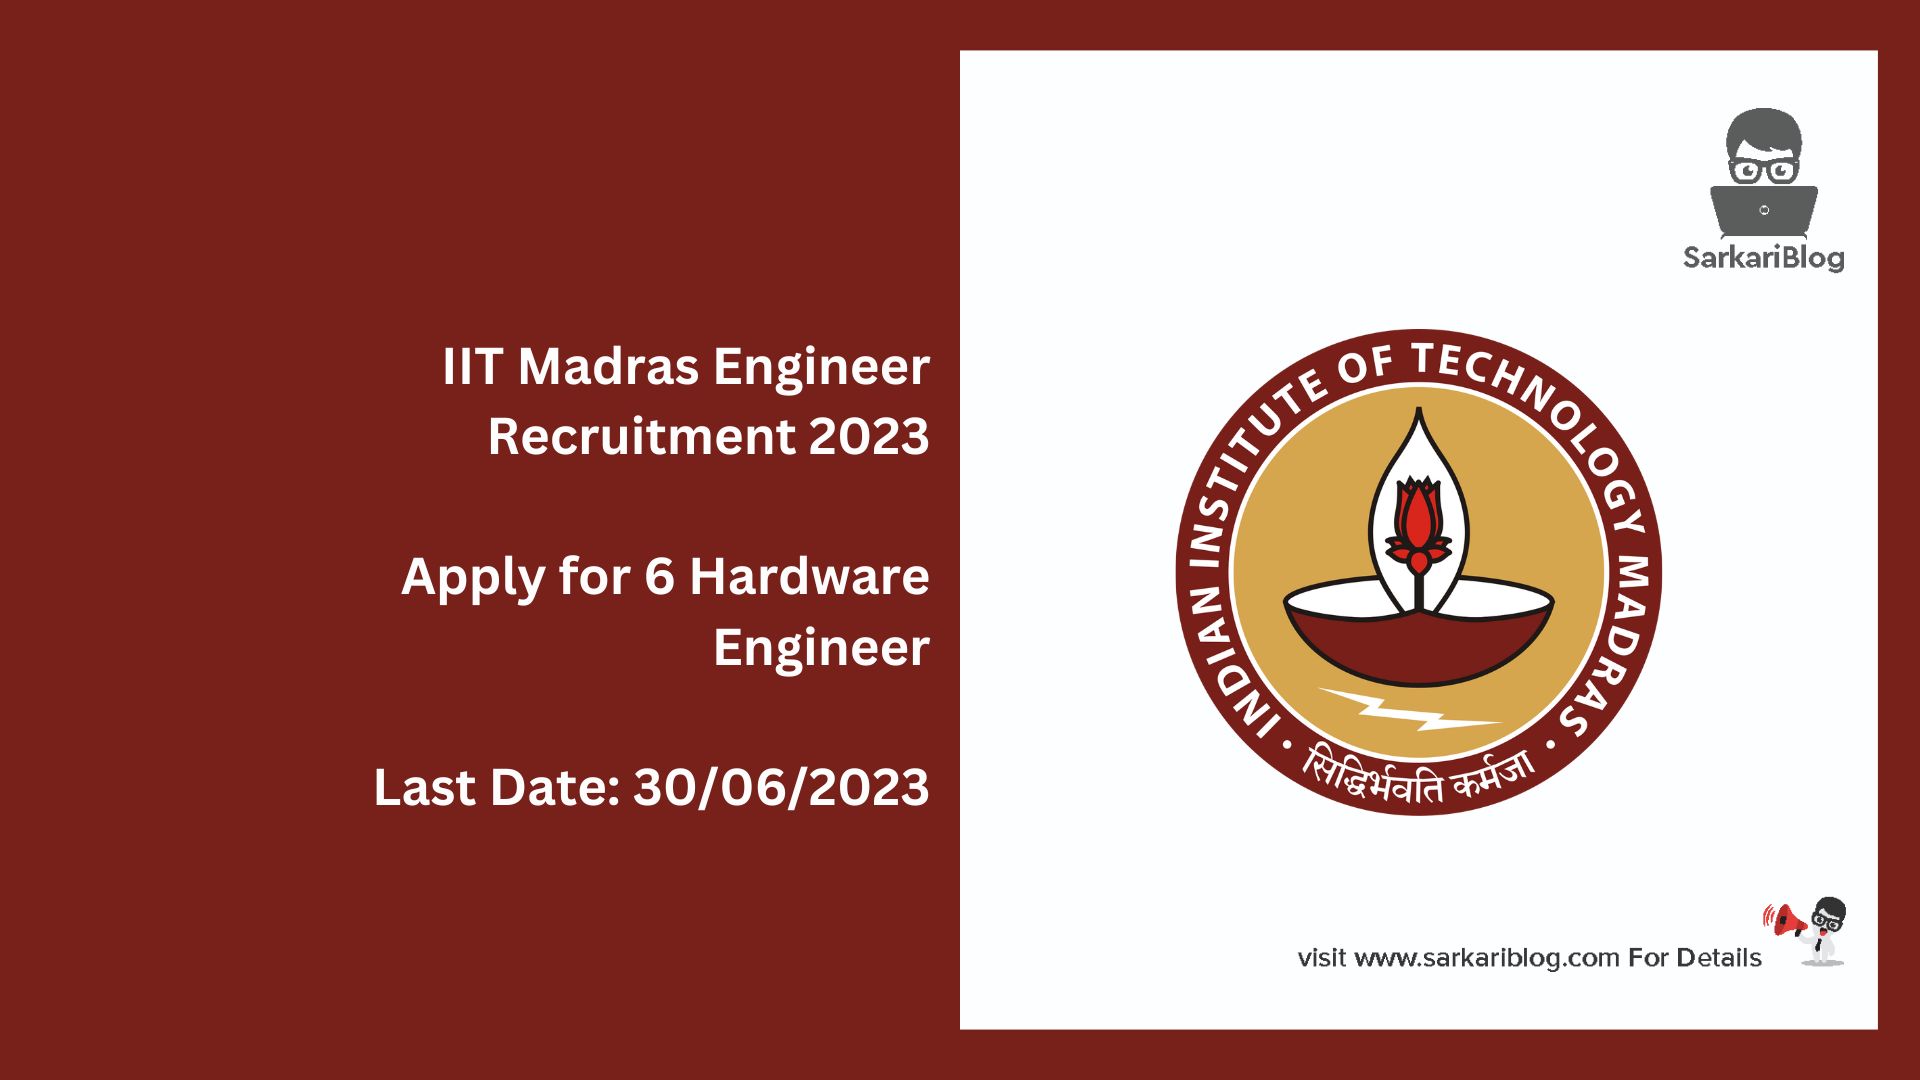 IIT Madras Engineer Recruitment 2023